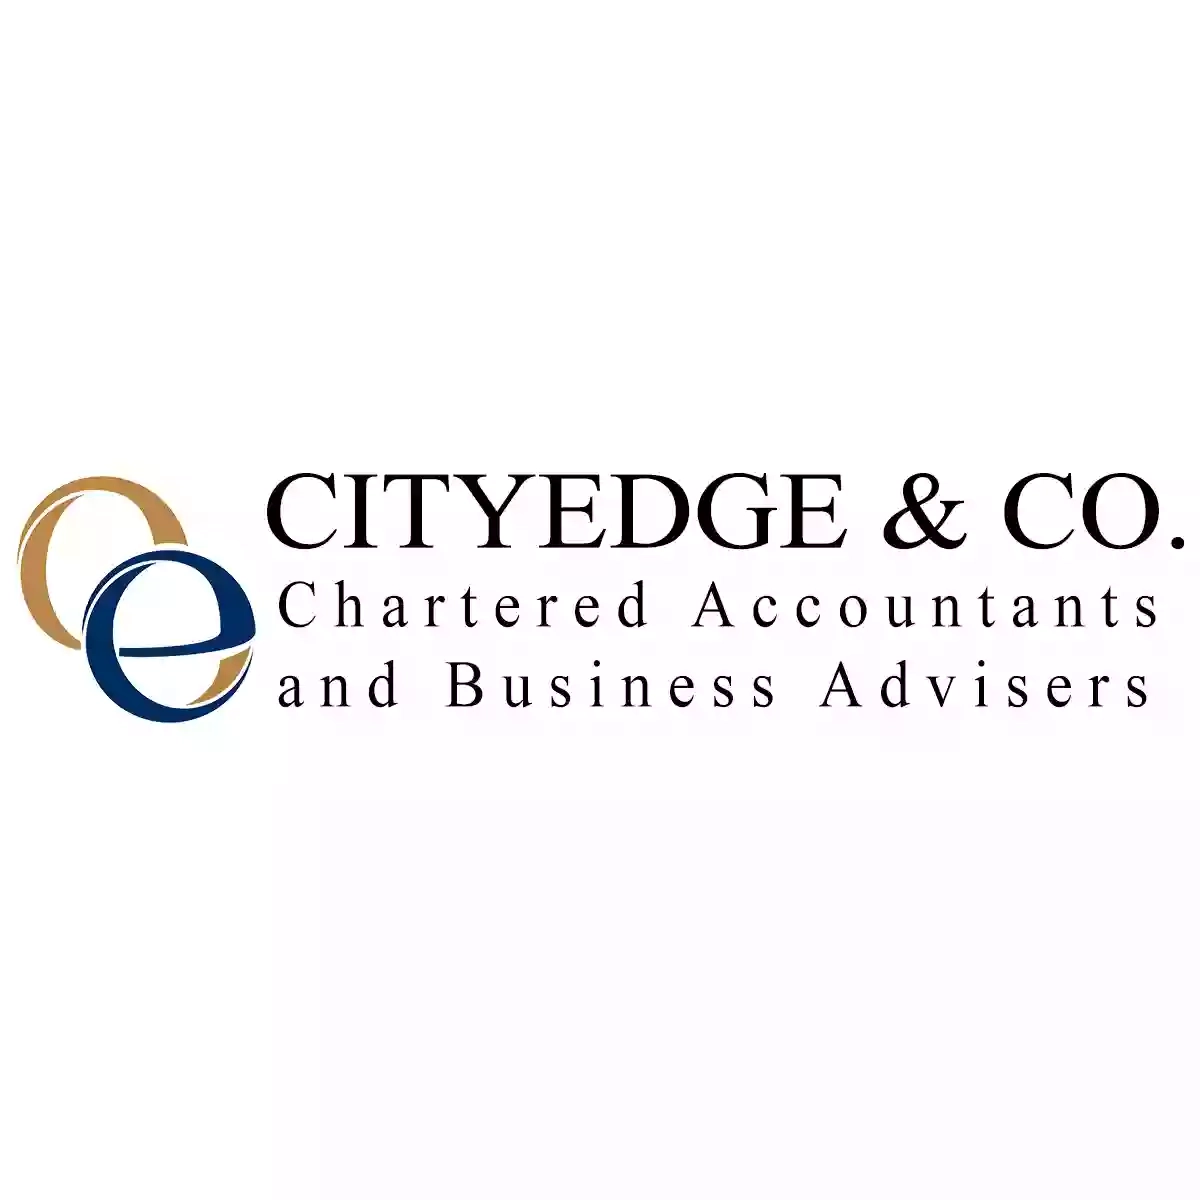 CityEdge & CO. Chartered Accountants